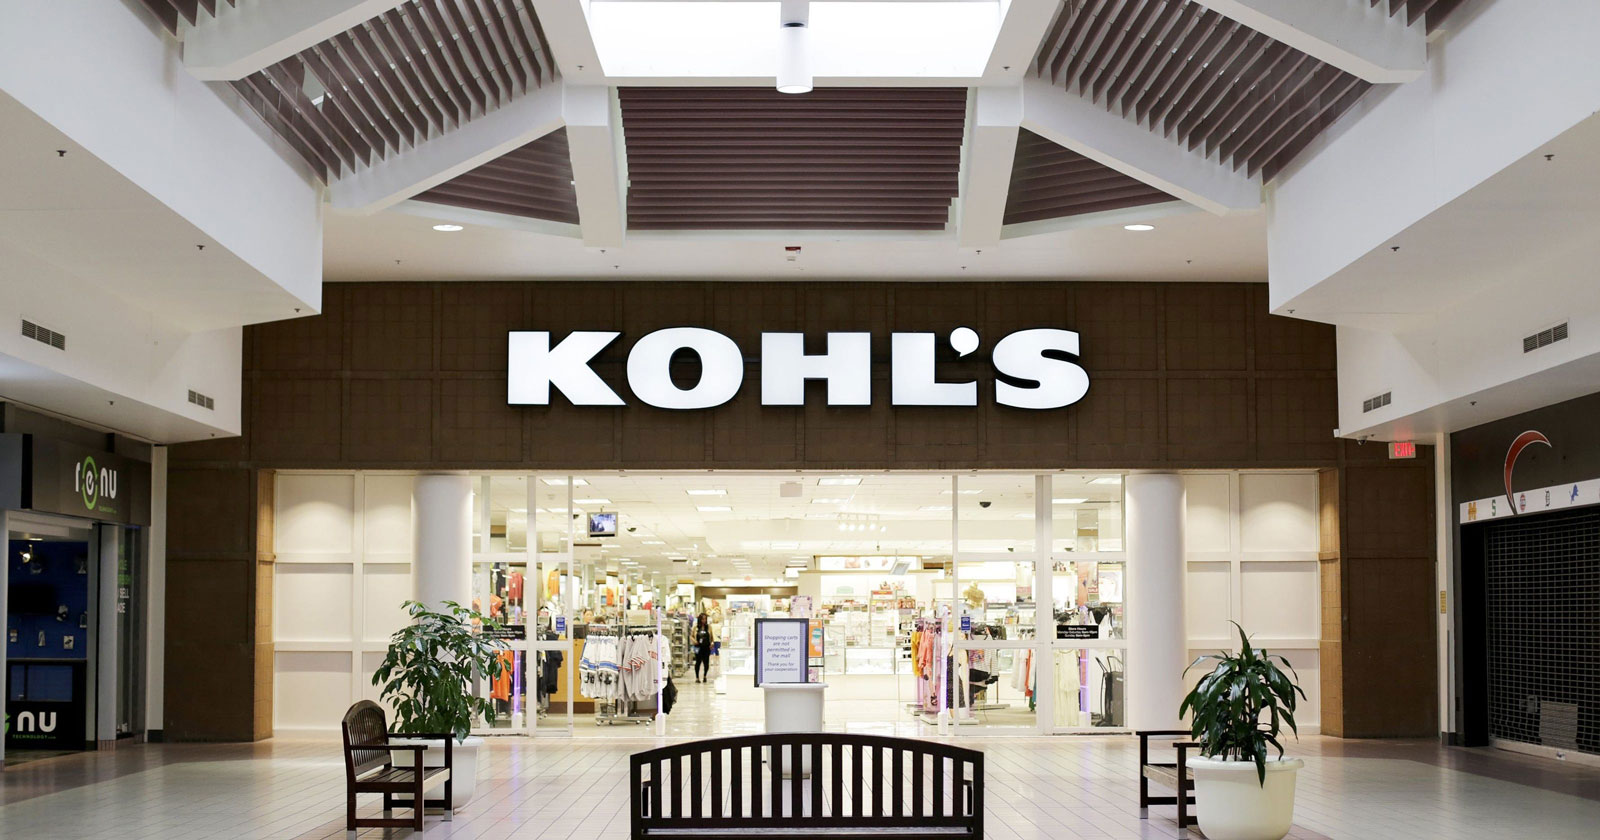 Kohl's Brand Identity - WNW